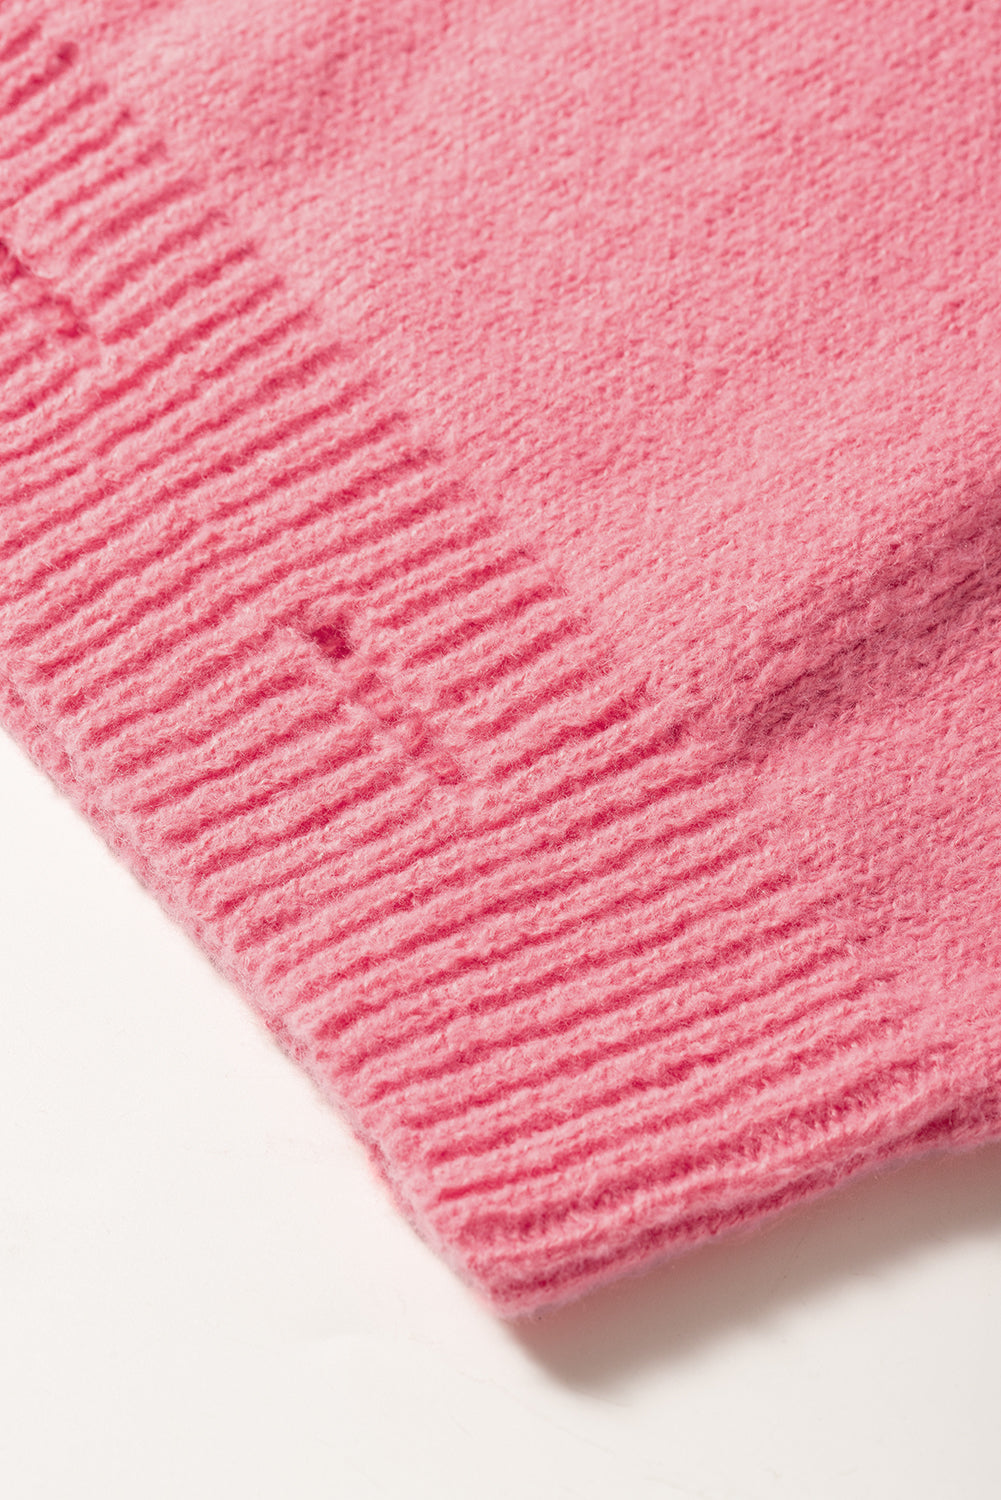 Rožnat širok pulover z resicami in v-izrezom